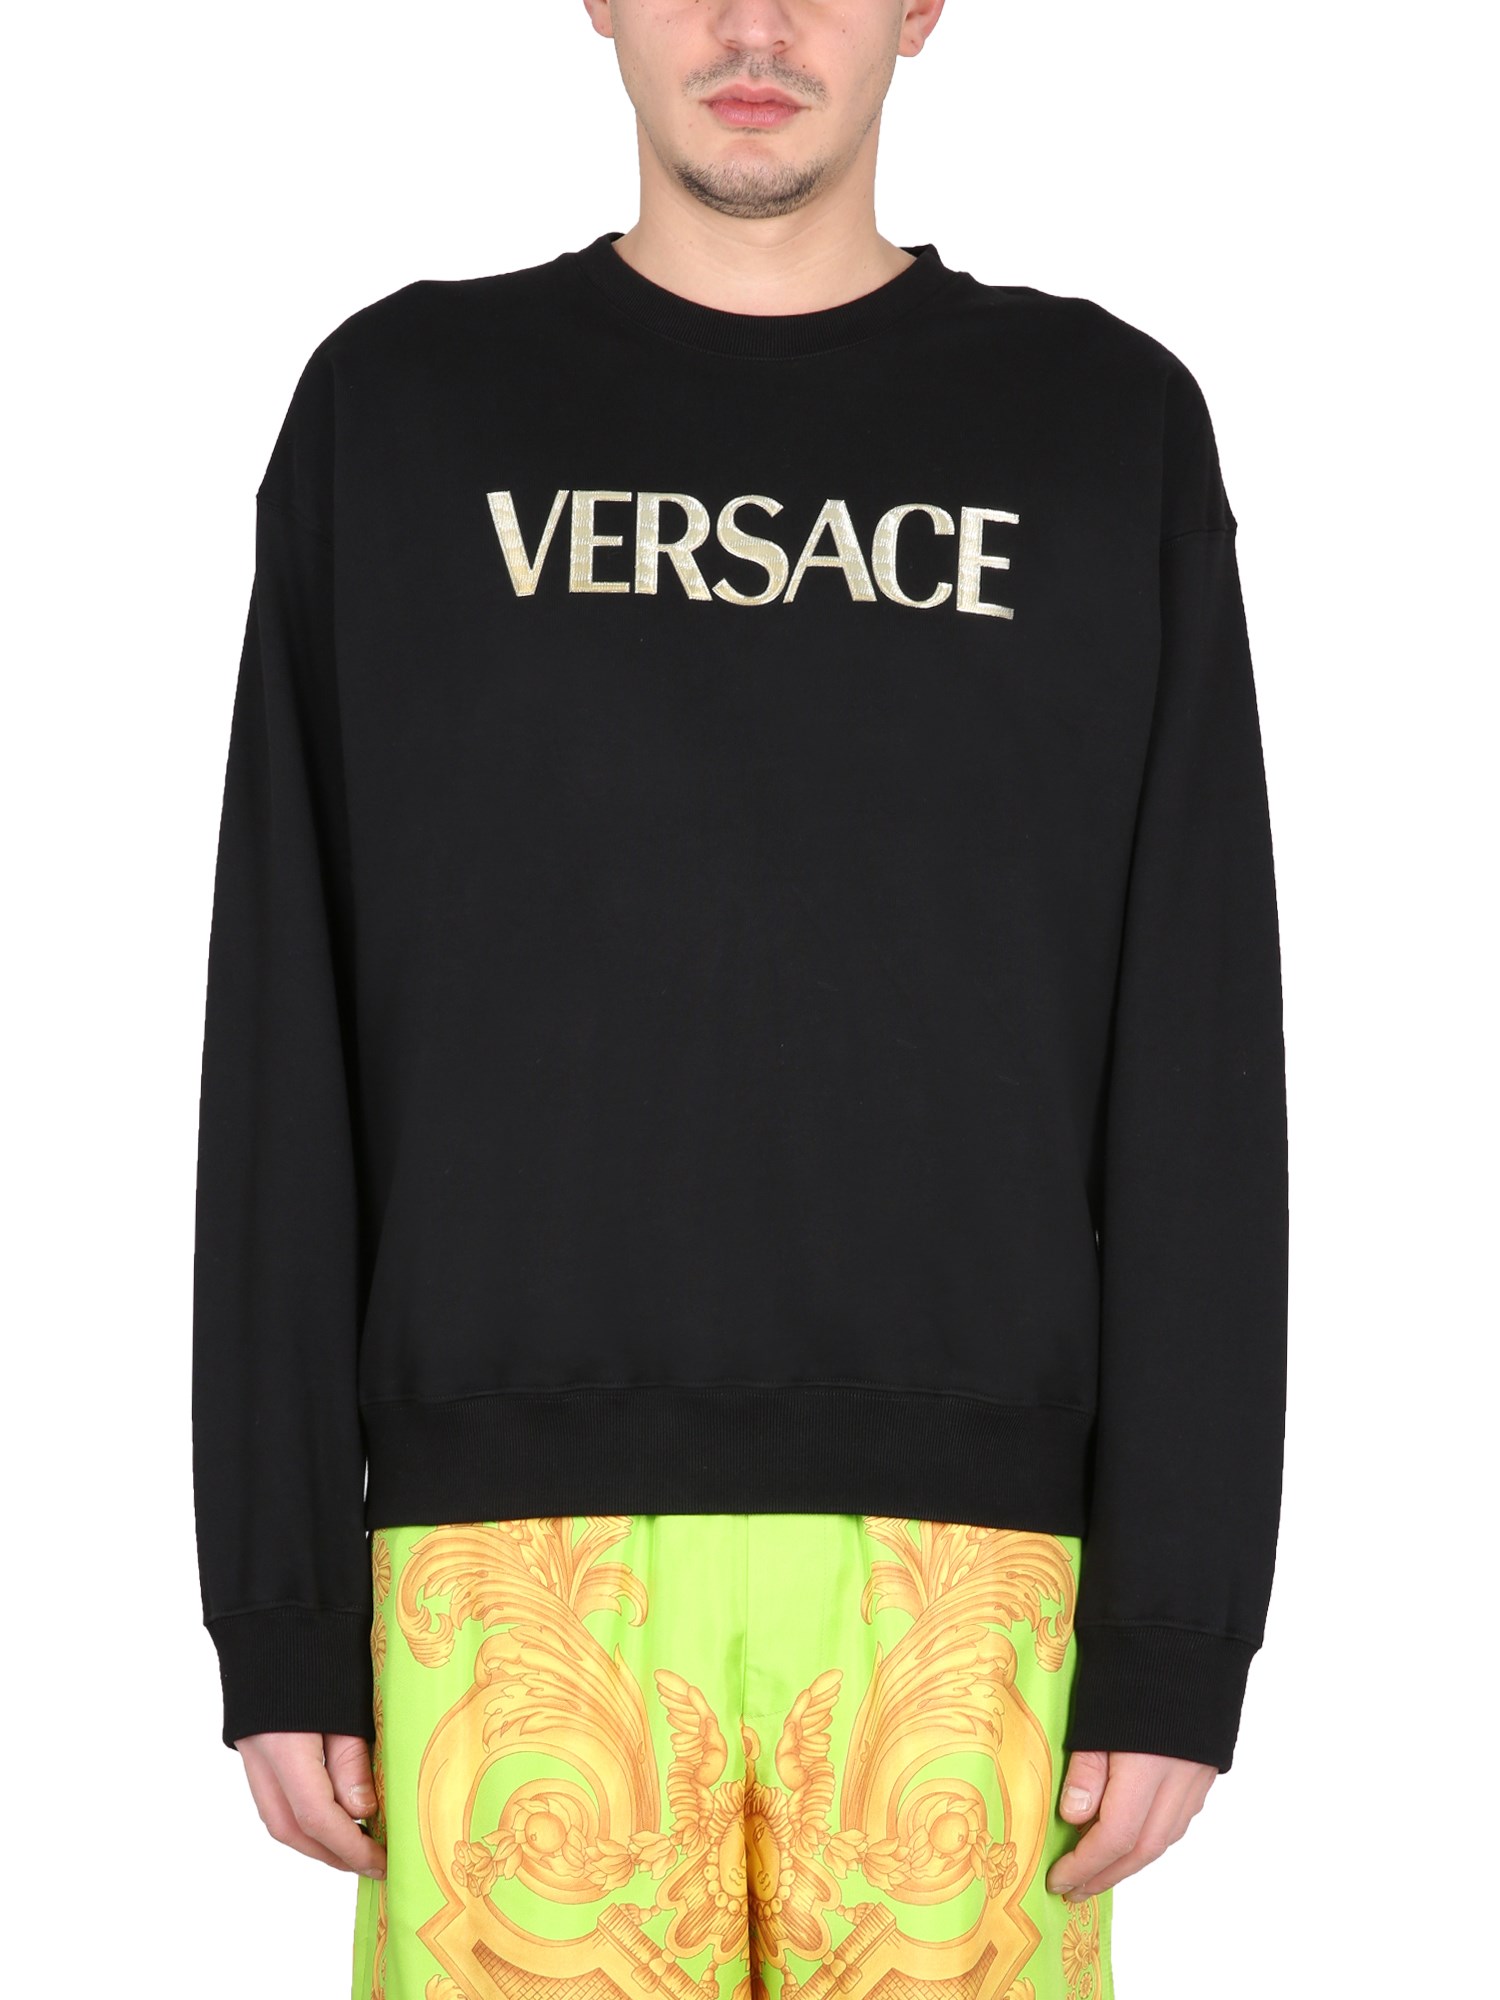 versace crewneck sweatshirt